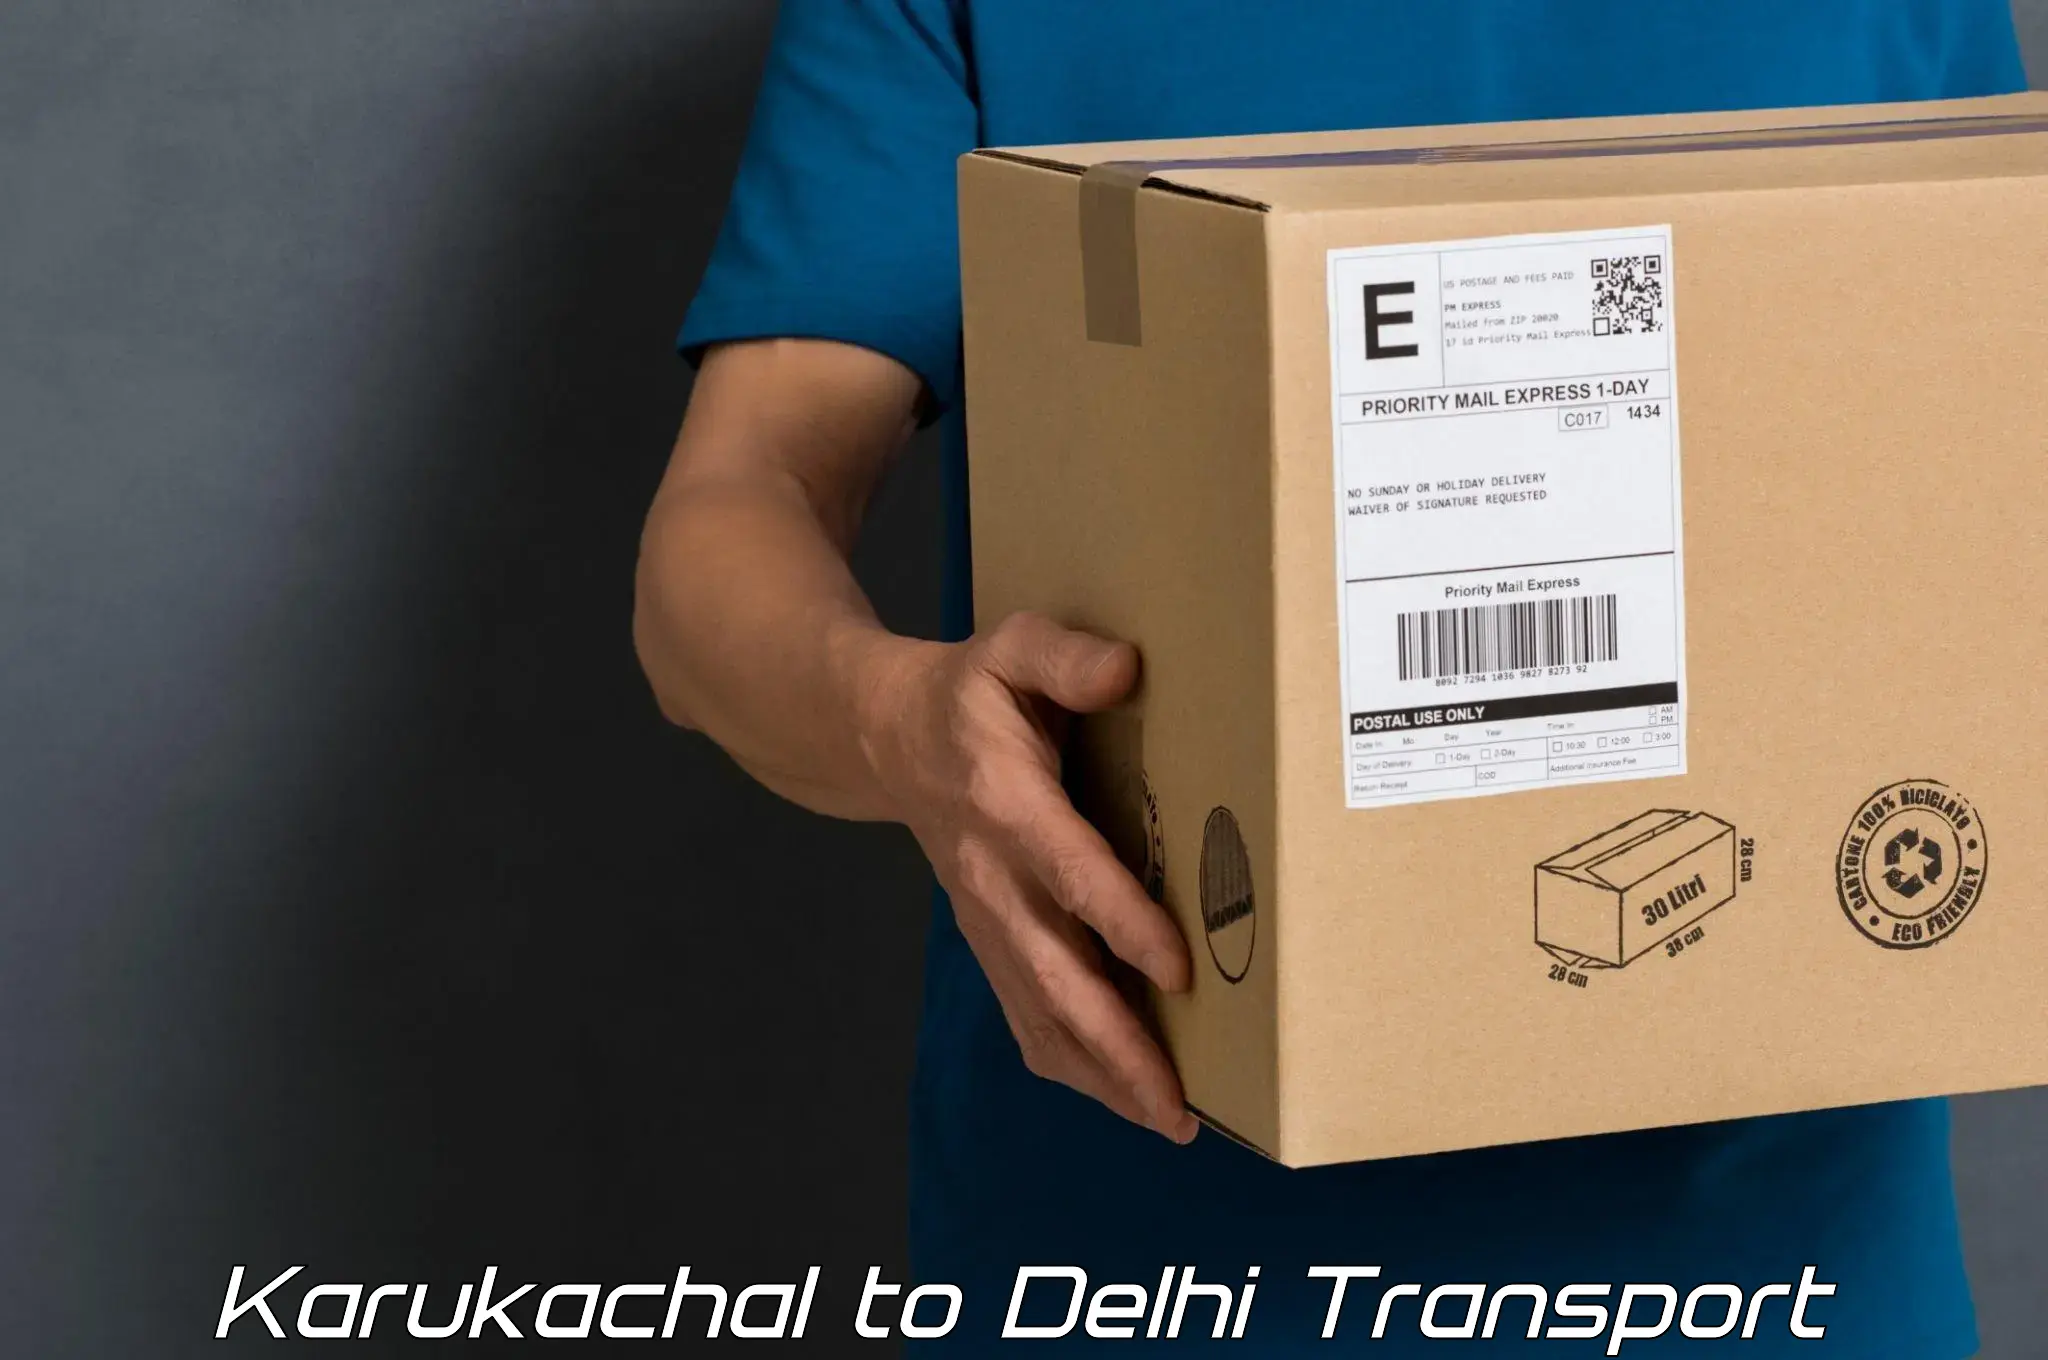 Online transport service Karukachal to IIT Delhi